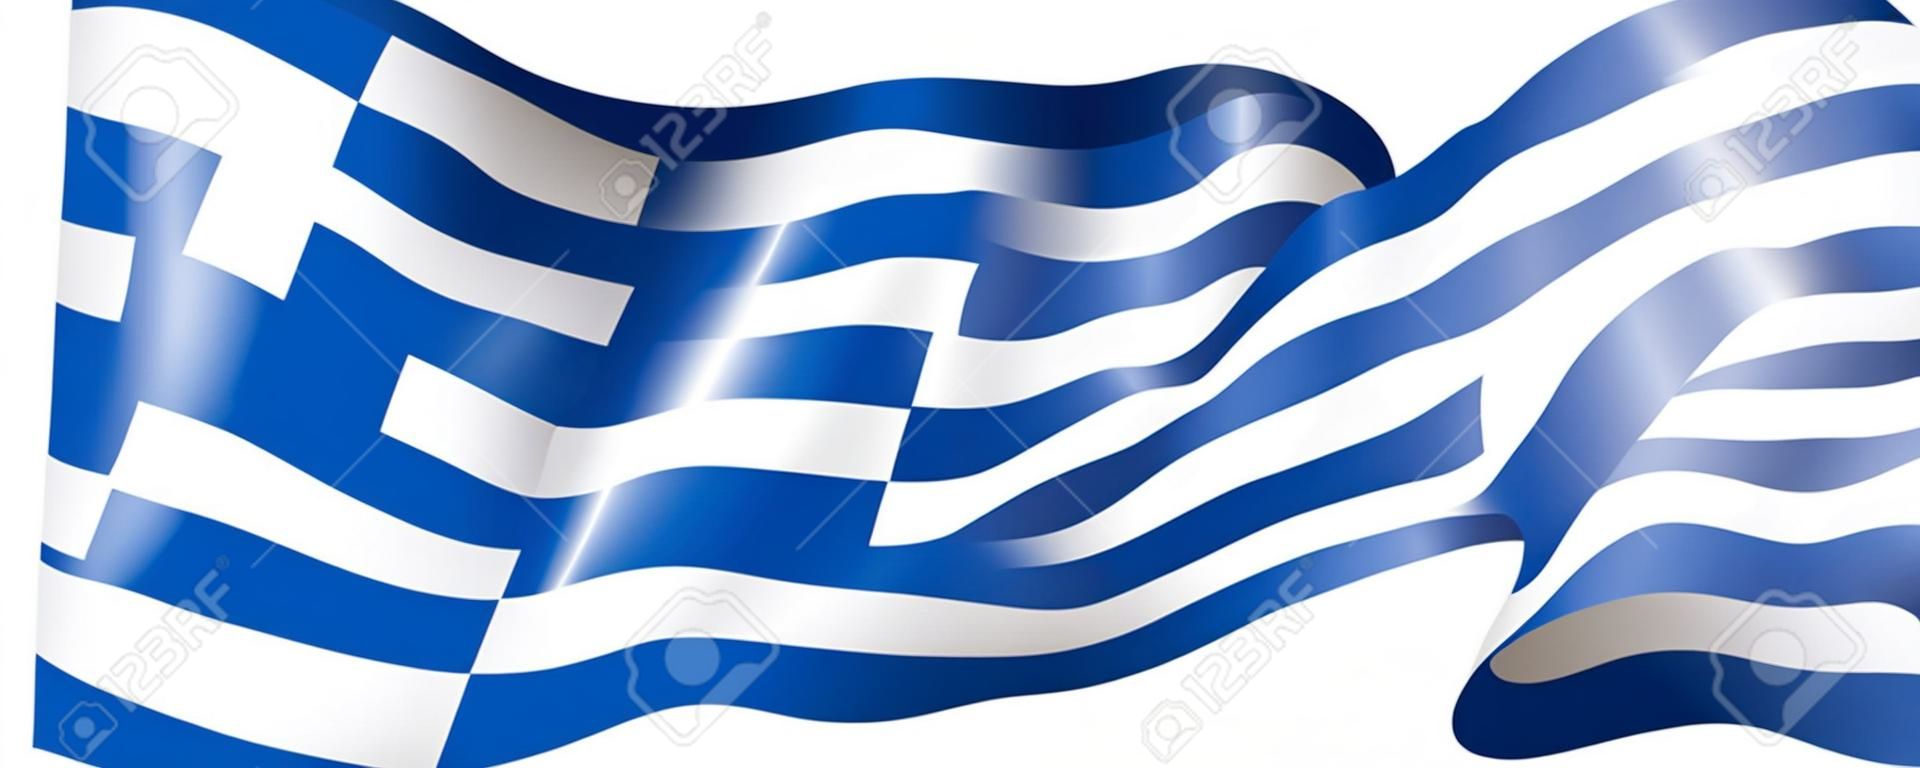 Bandera de Grecia, ilustración vectorial sobre un fondo blanco.